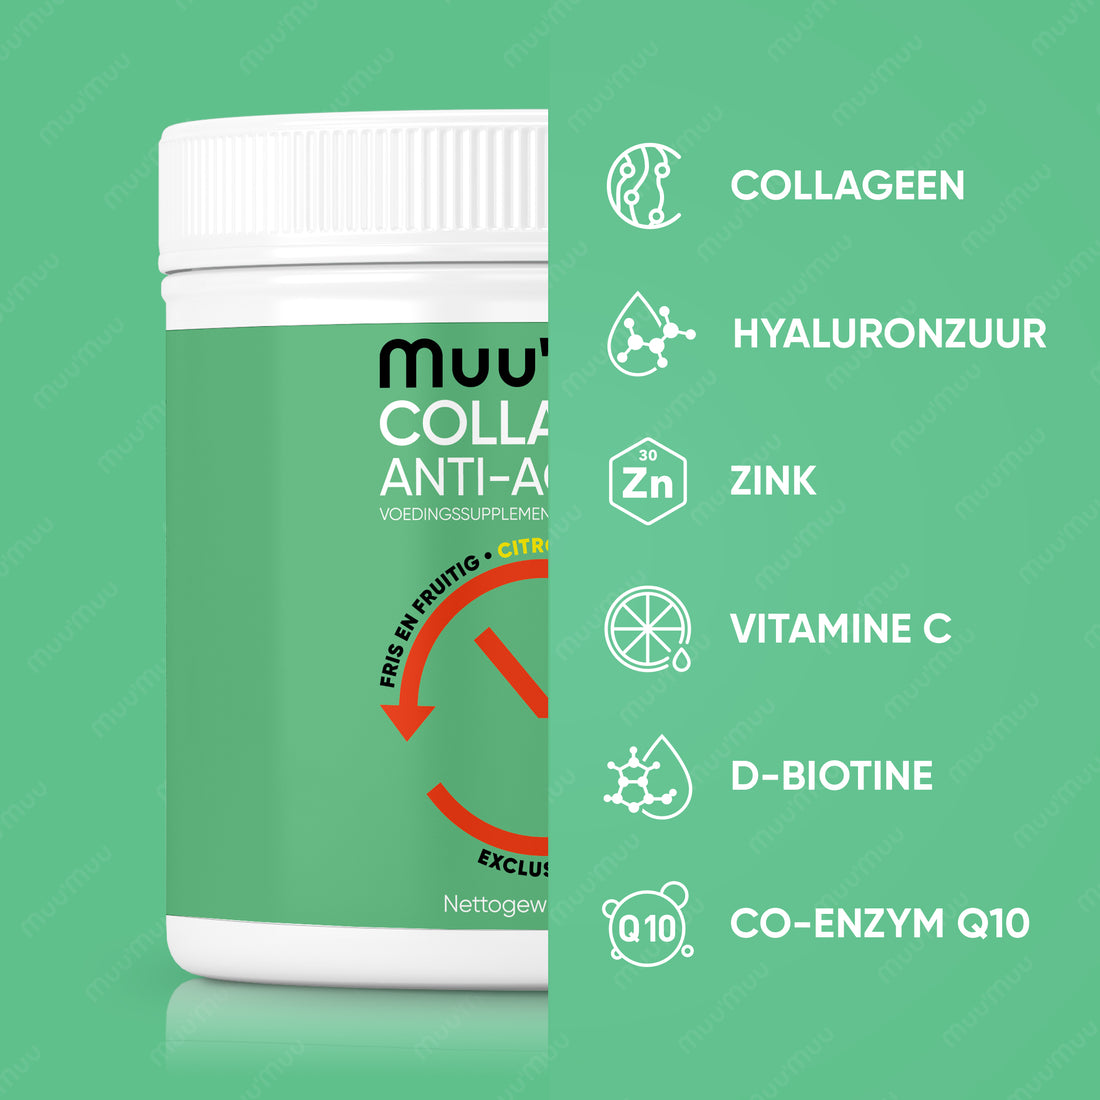 Muu'Muu: Een krachtige combinatie van collageen en anti-age ingrediënten.